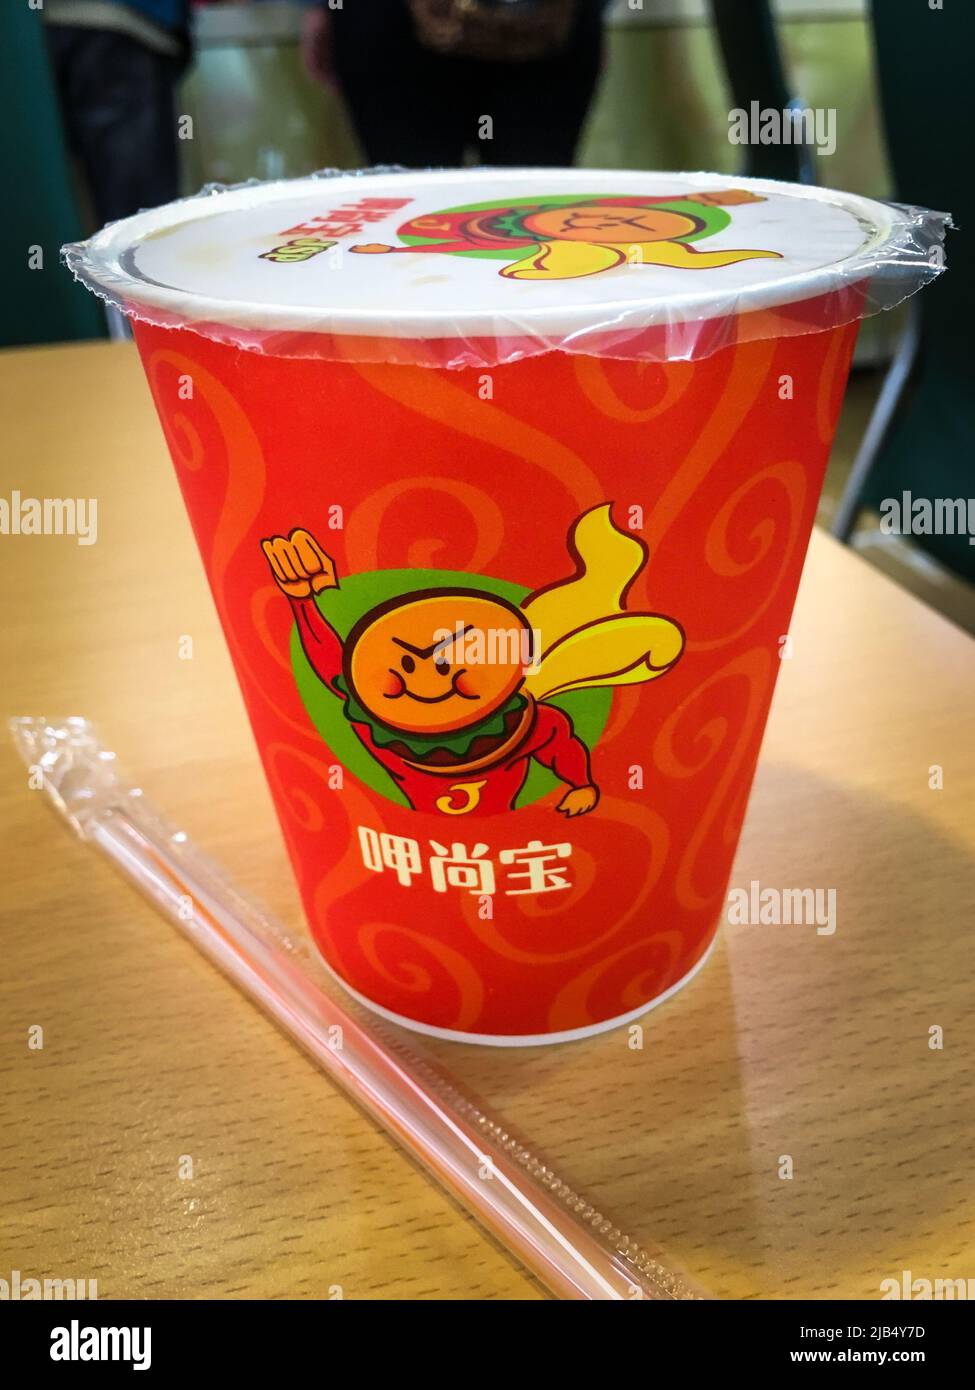 Taipei, Taiwan - Dec 19, 2019 : das Bild des Milchteetassen von JSP, taiwanesischem Fast-Food-Restaurant. Stockfoto